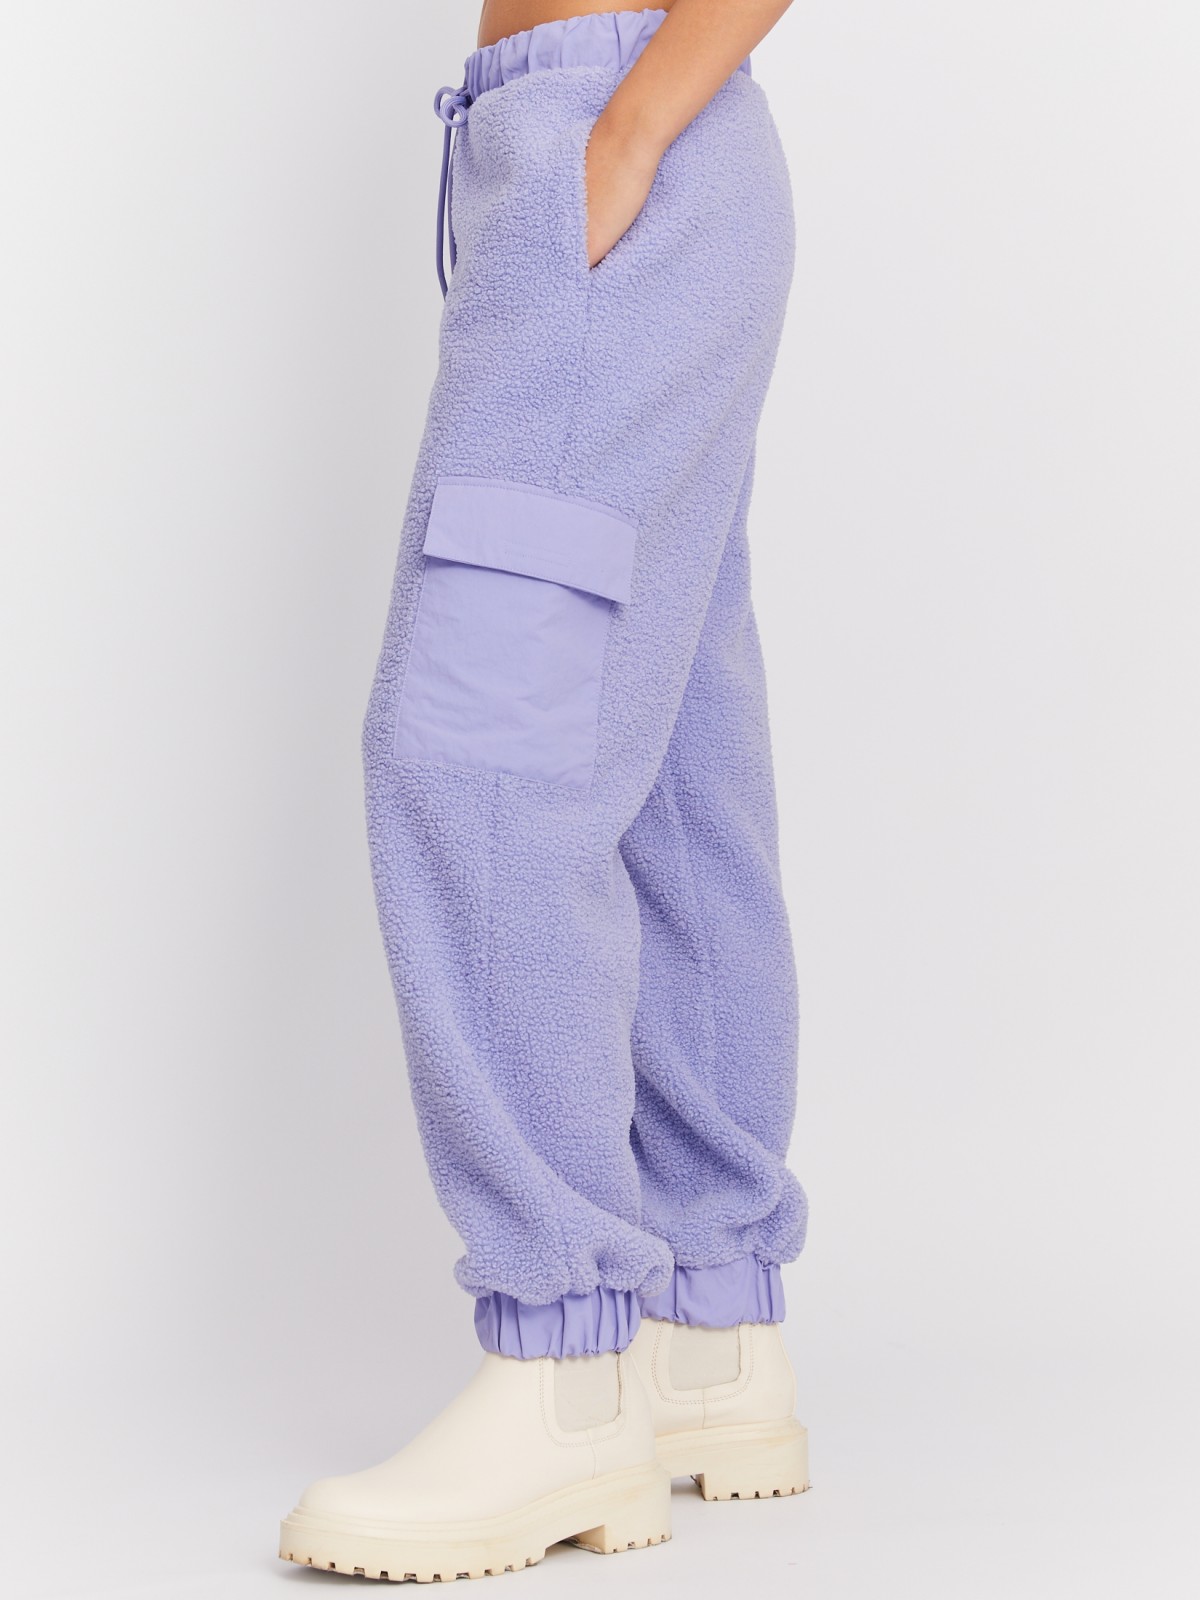 Тёплые брюки-джоггеры из экомеха с карманом карго zolla 023427643031, цвет фиолетовый, размер XS - фото 3